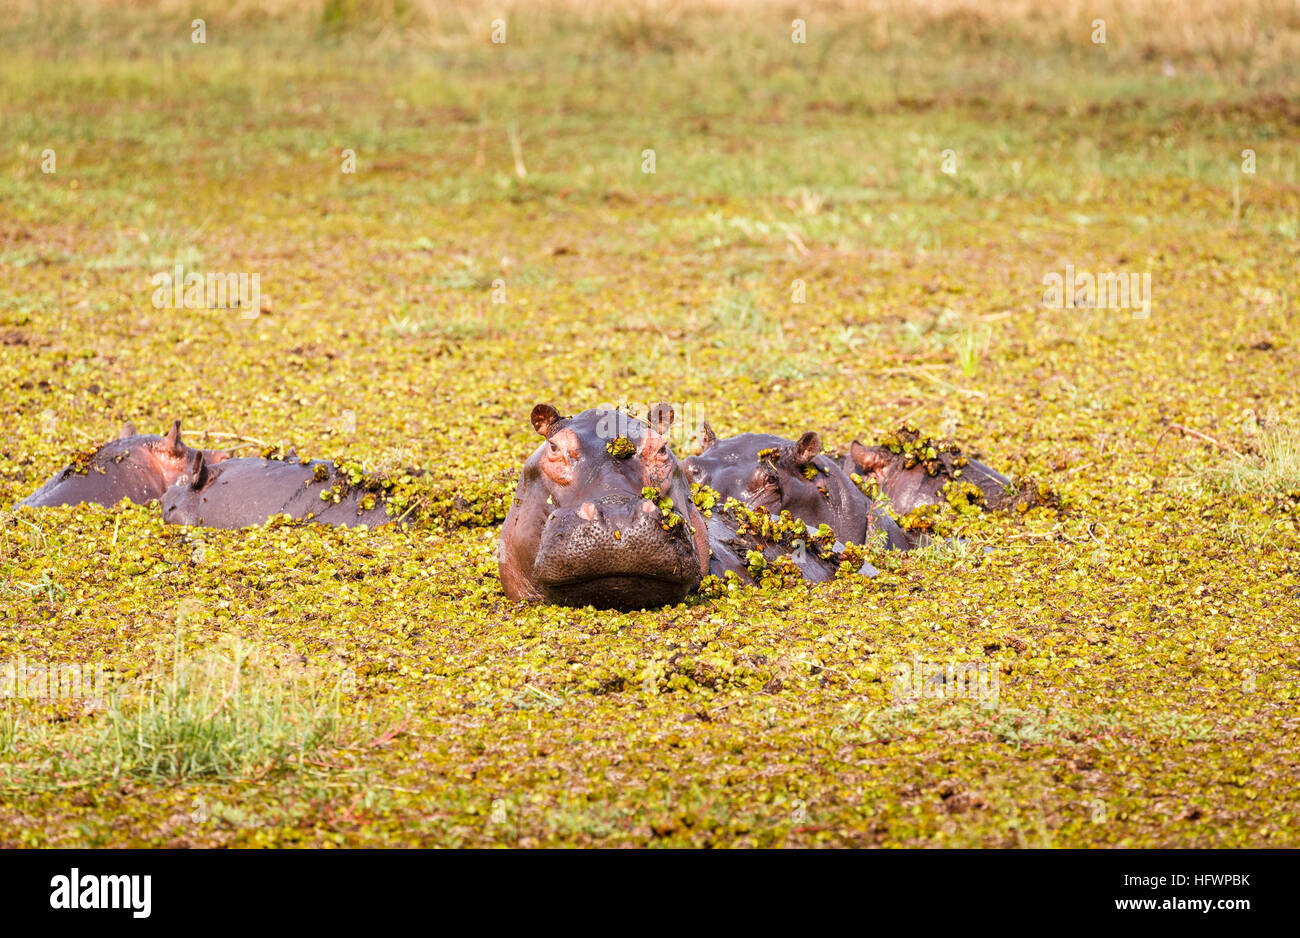 Hippopotame (Hippopotamus amphibius) tête émergeant de l'eau couvert de mauvaises herbes de l'étang, Moremi, Okavango Delta, Kalahari, Botswana, Africa Banque D'Images